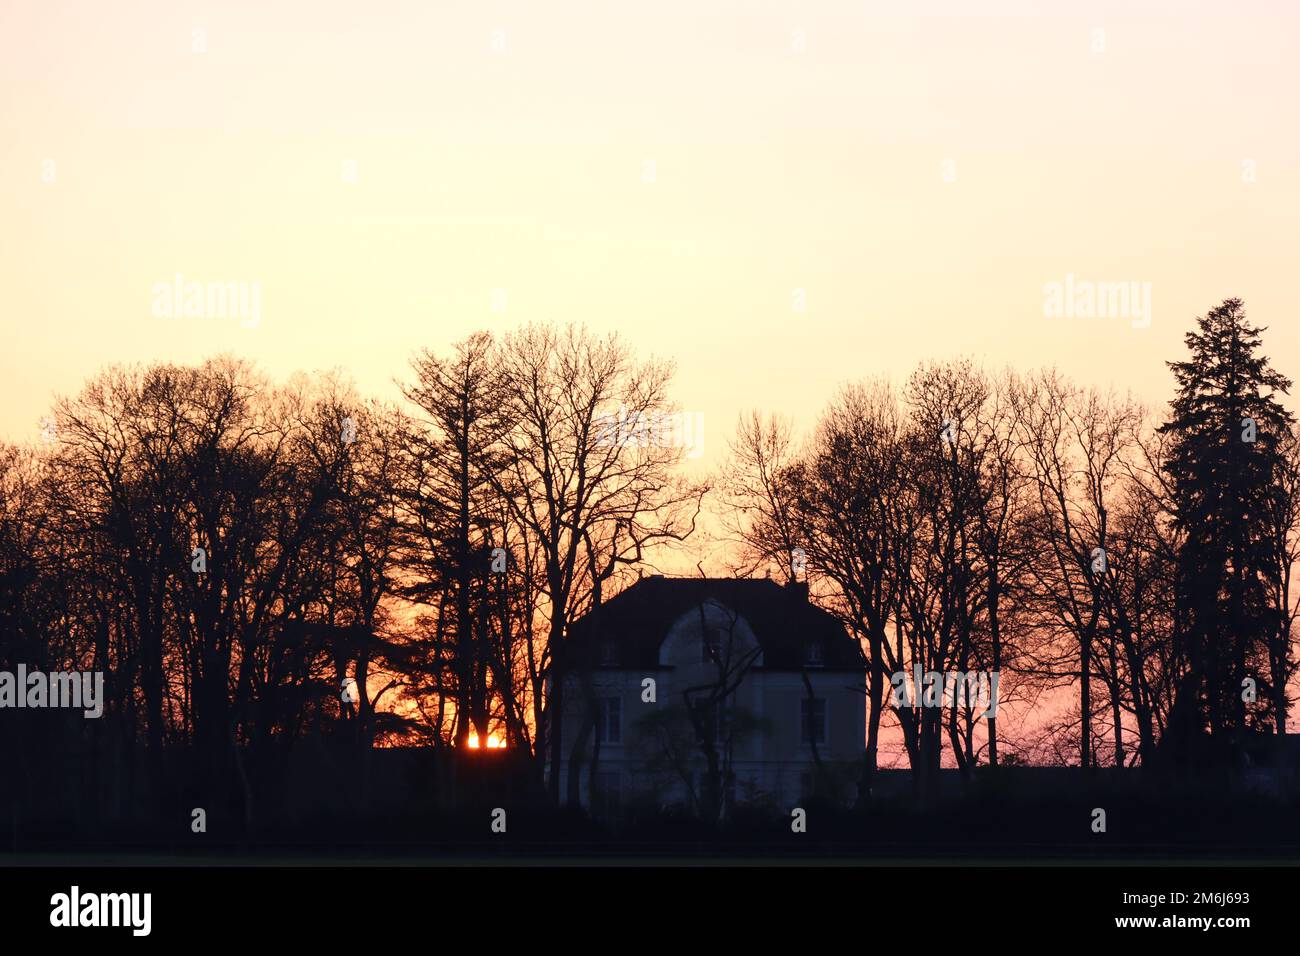 Imagen de portada puesta de sol detrás de la villa solitaria Foto de stock